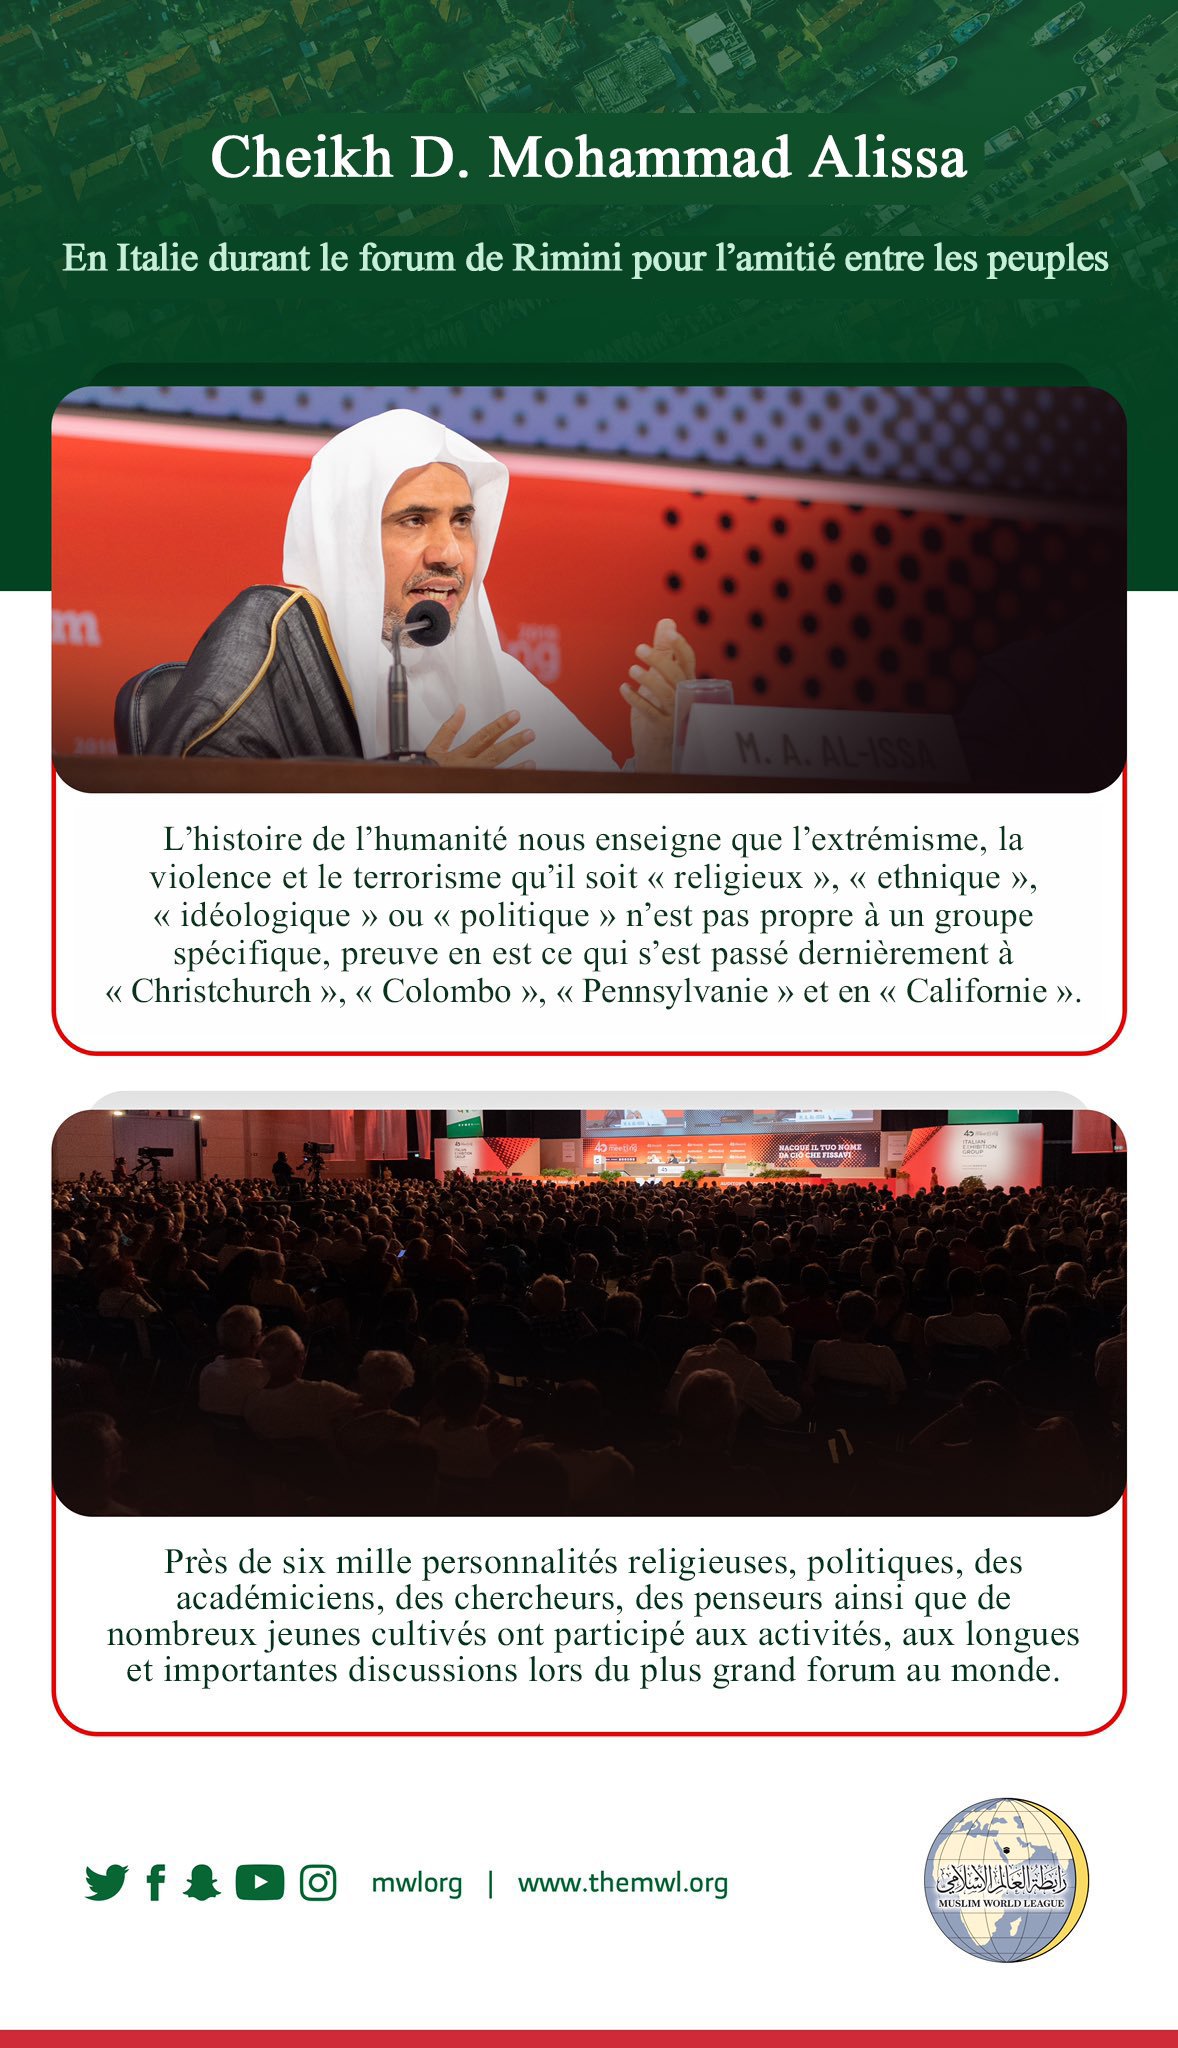 D.Mohammad Alissa est la première personnalité islamique qui participe à un dialogue ouvert lors des activités du plus grand forum européen avec une participation hebdomadaire d’un million de visiteurs.